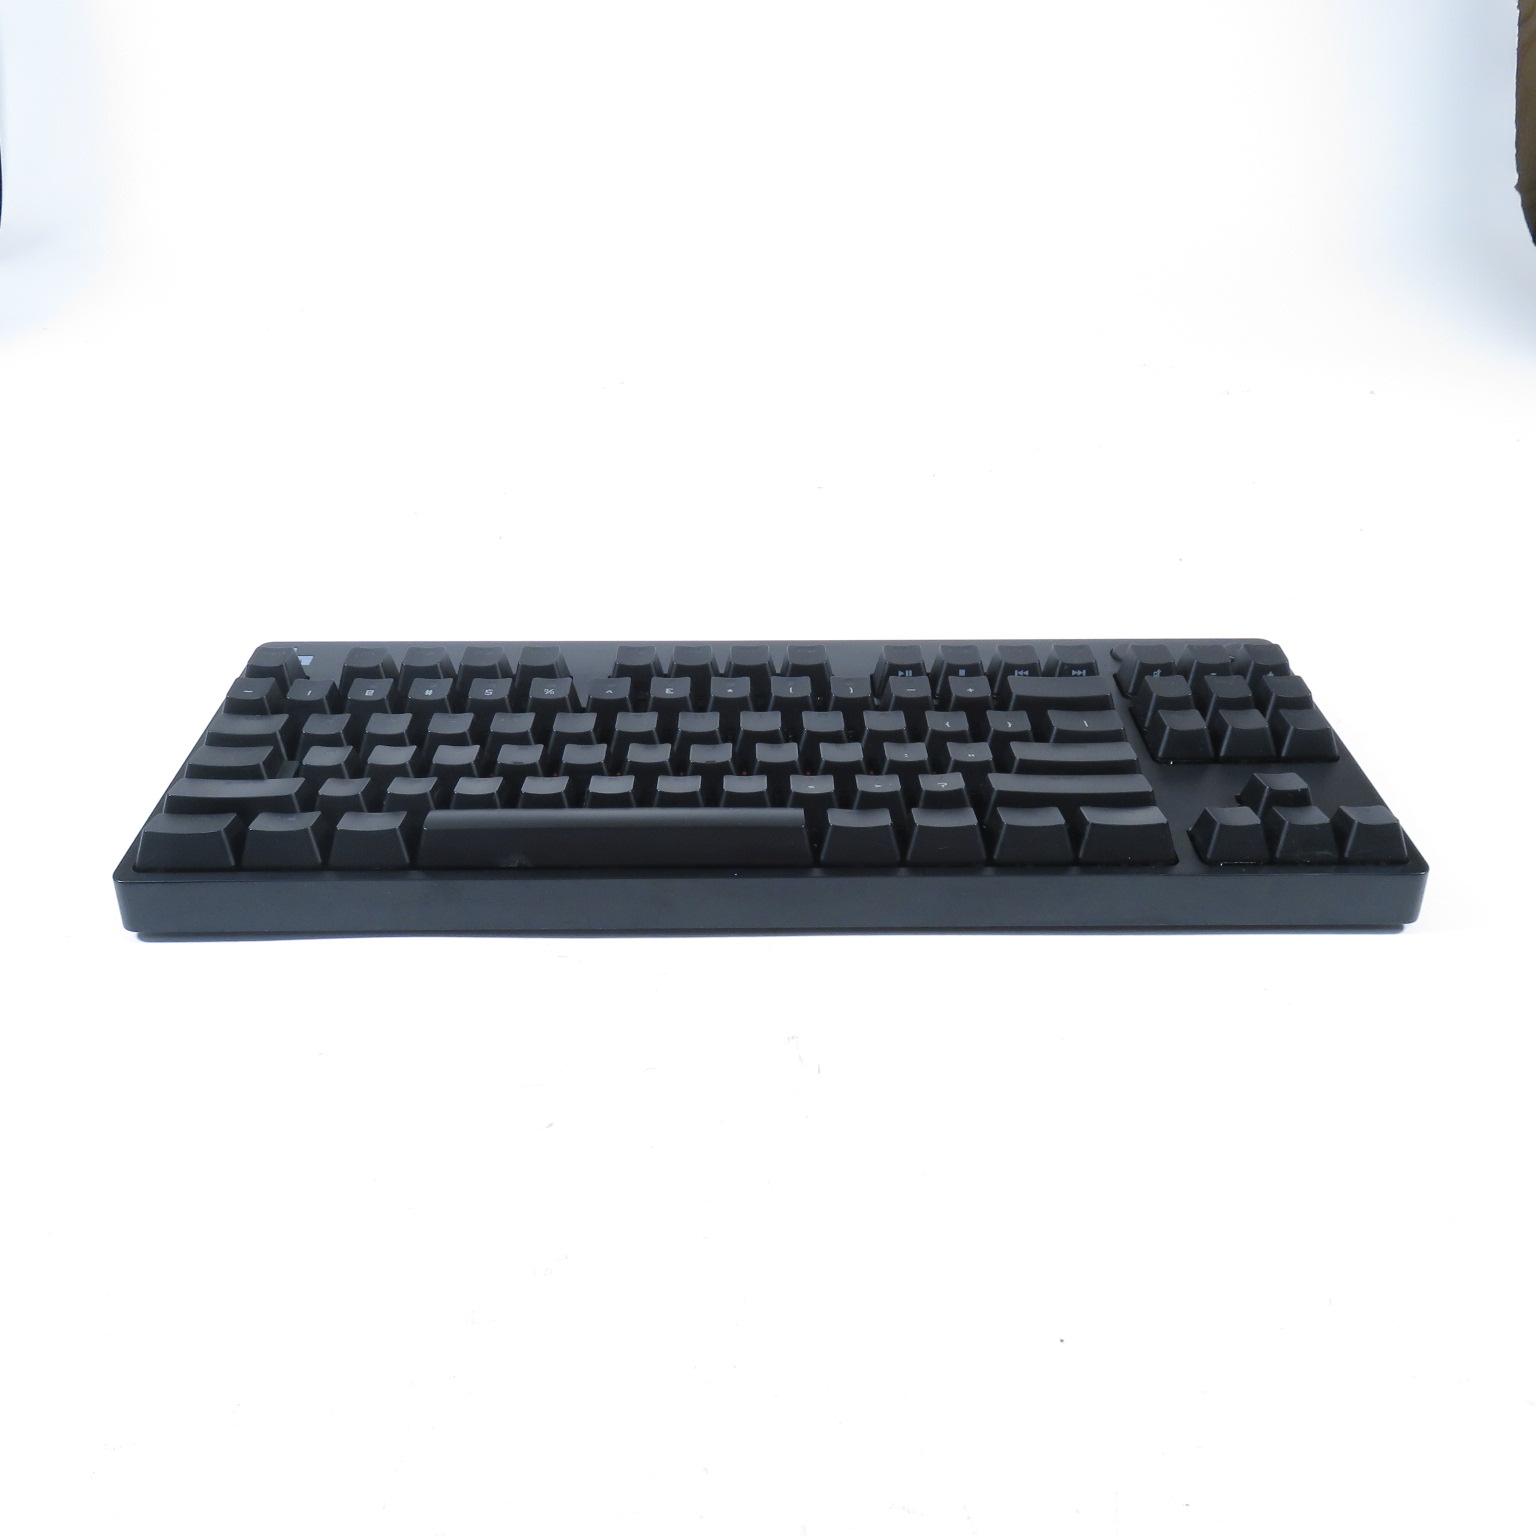  Logitech G PRO Mechanical Gaming Keyboard, Ultra